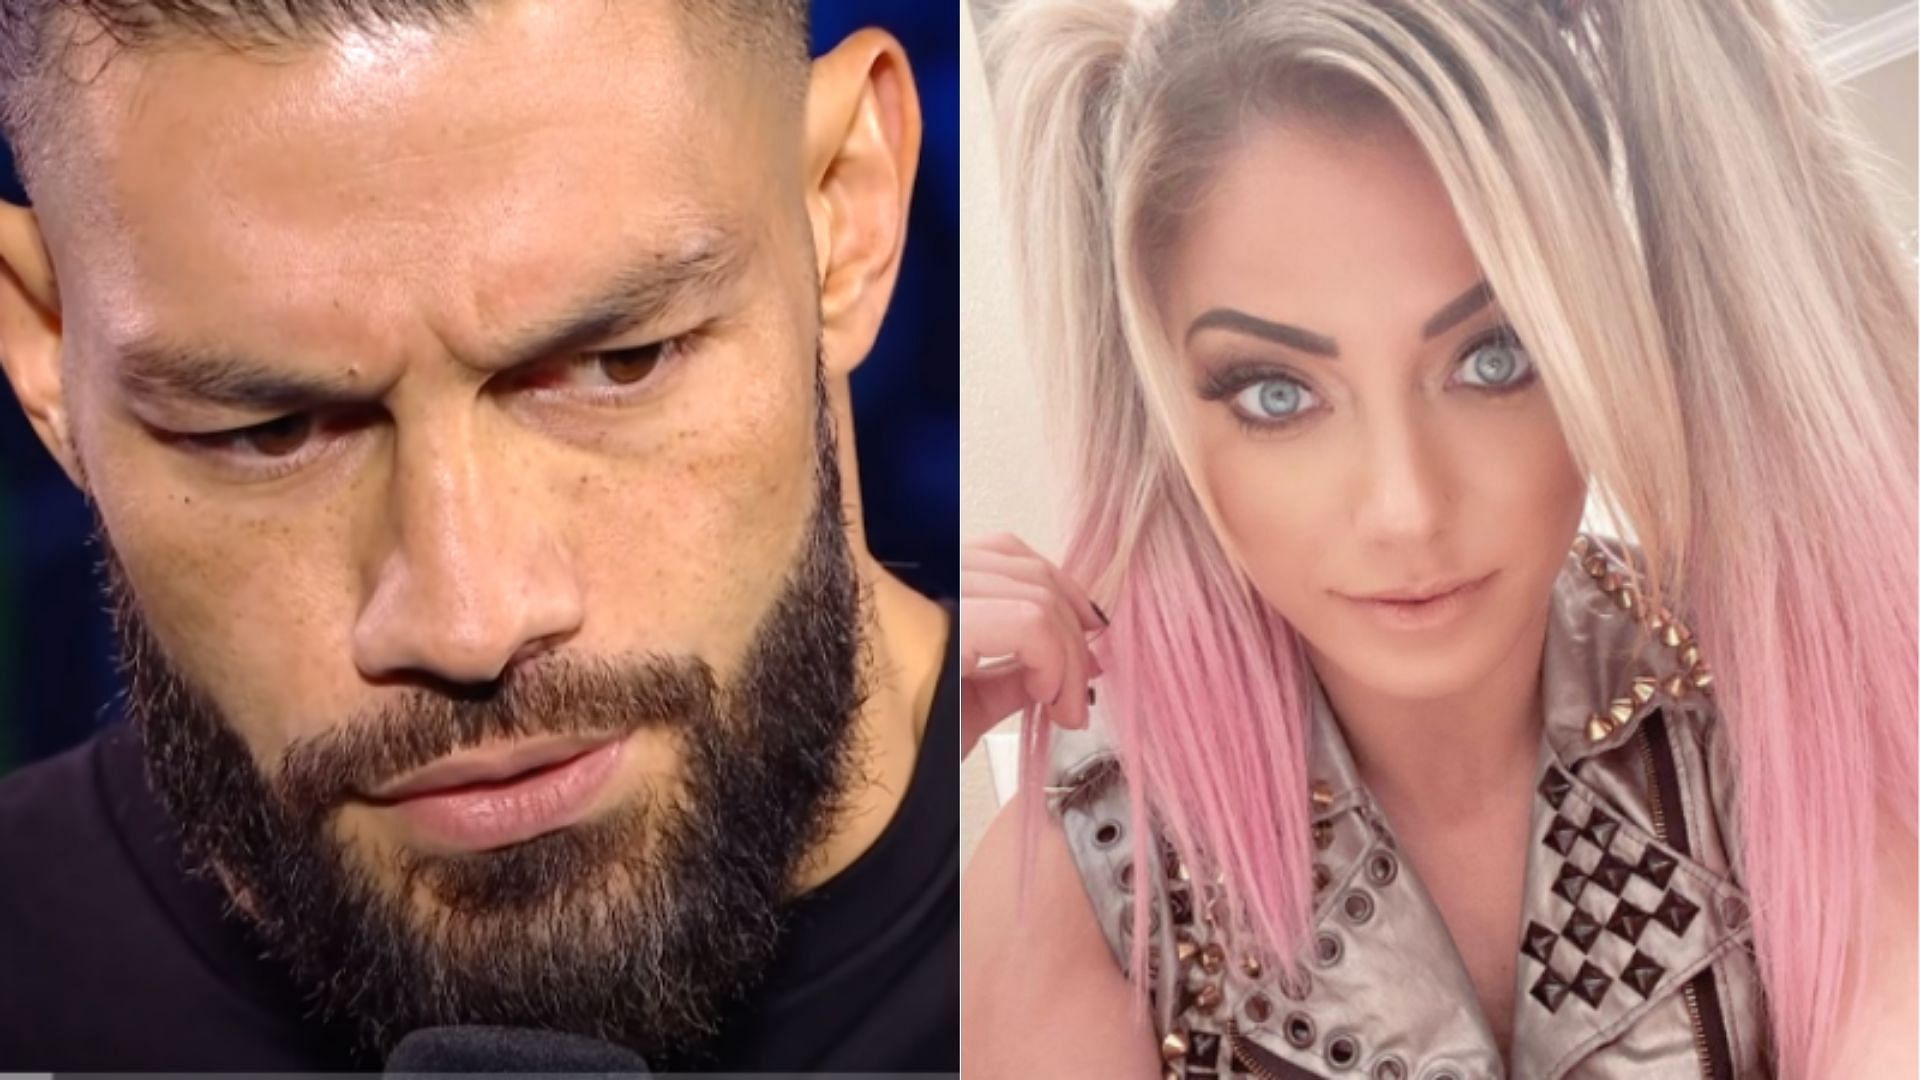 WWE Superstars Roman Reigns and Alexa Bliss